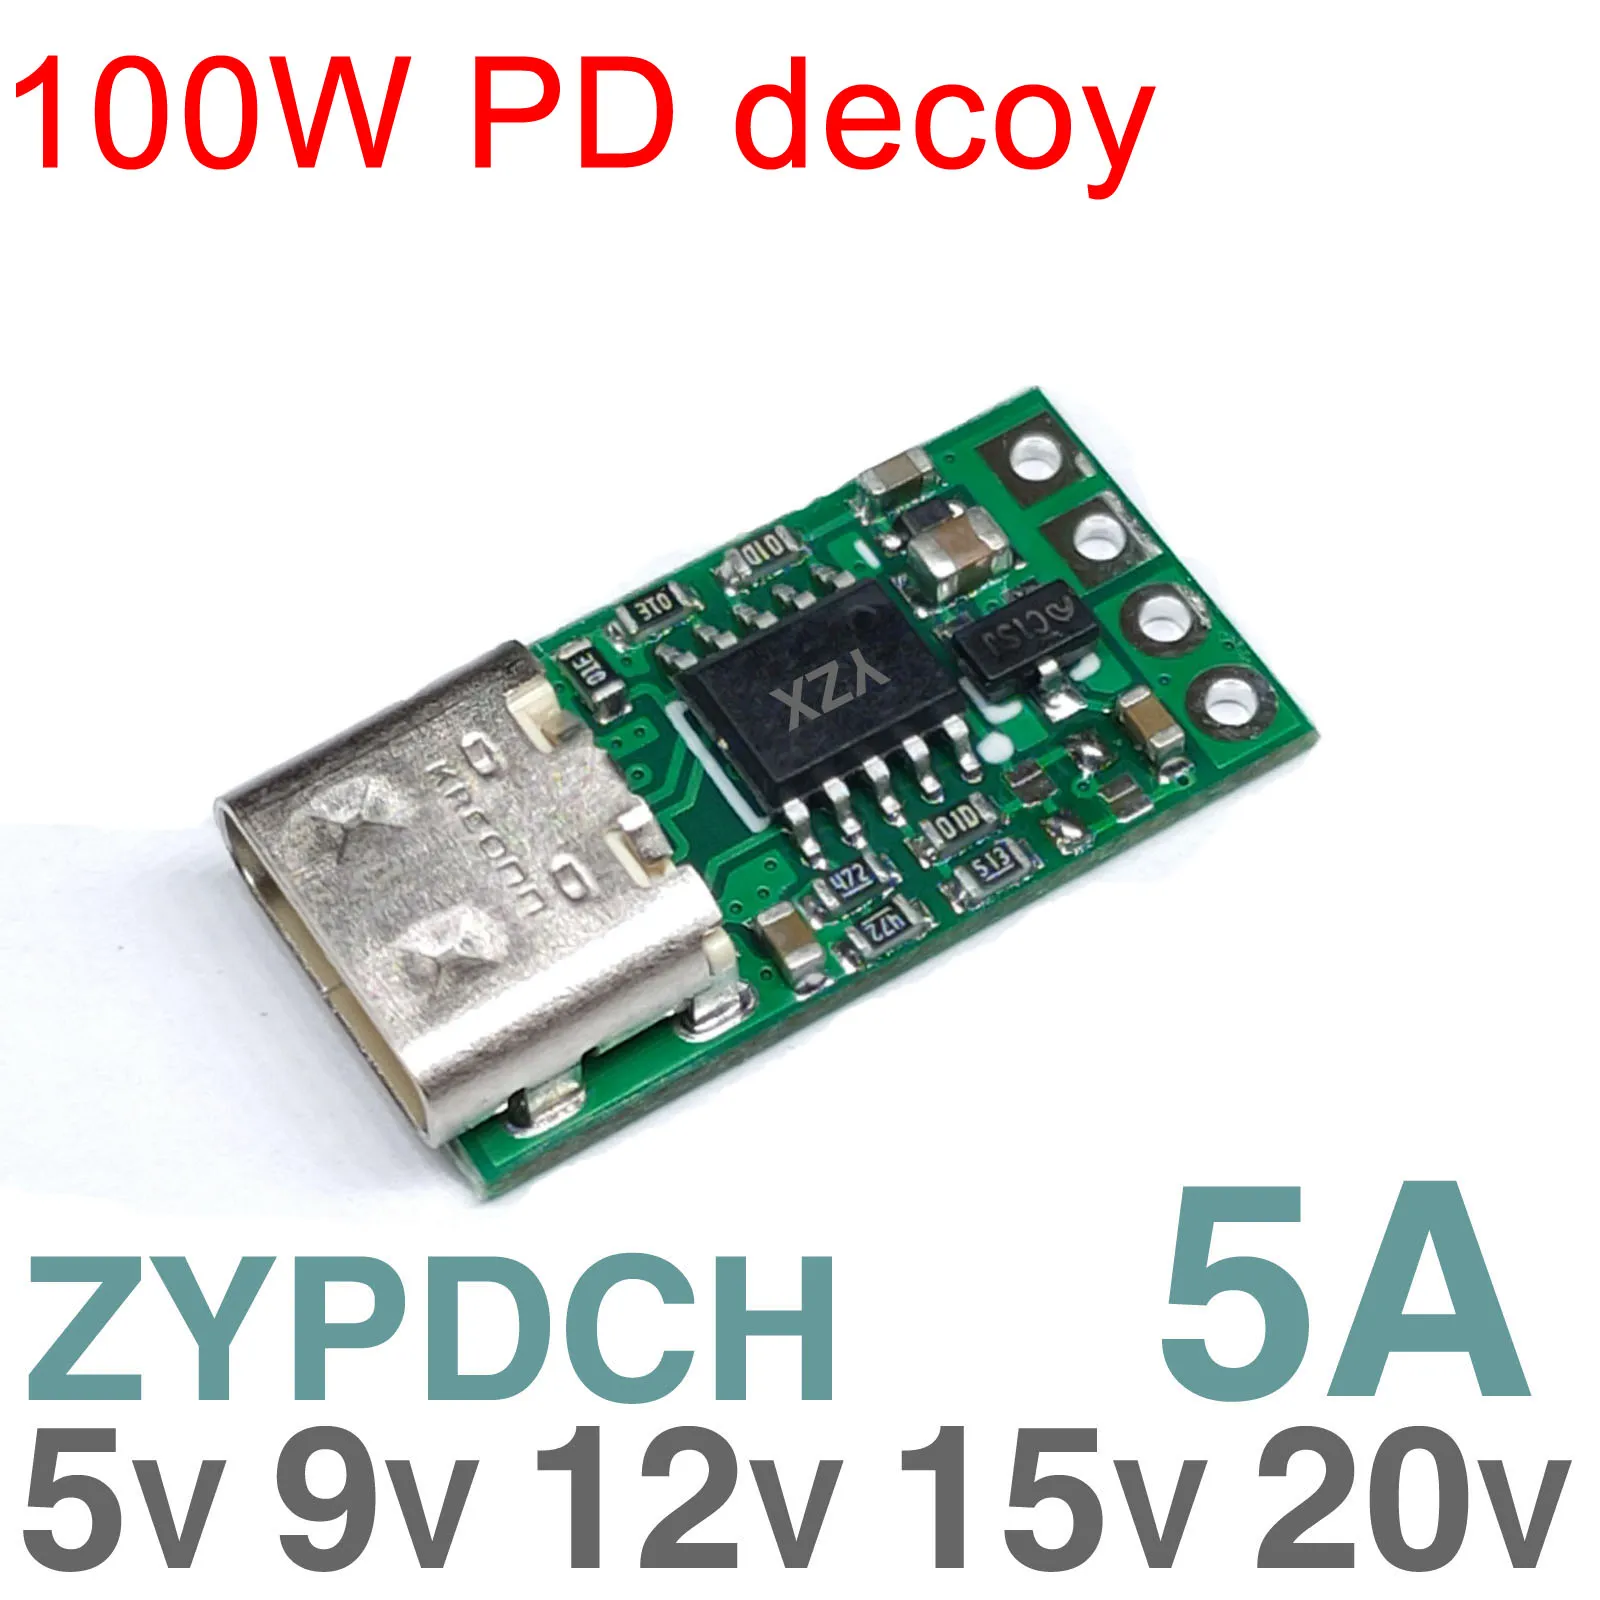 100 Вт TYPE-C decoy PD от 2,0 3,0 До 5 В 12 В 15 В 20 В постоянного тока Кабель-адаптер для запуска QC4 charge Модуль для зарядки ноутбука